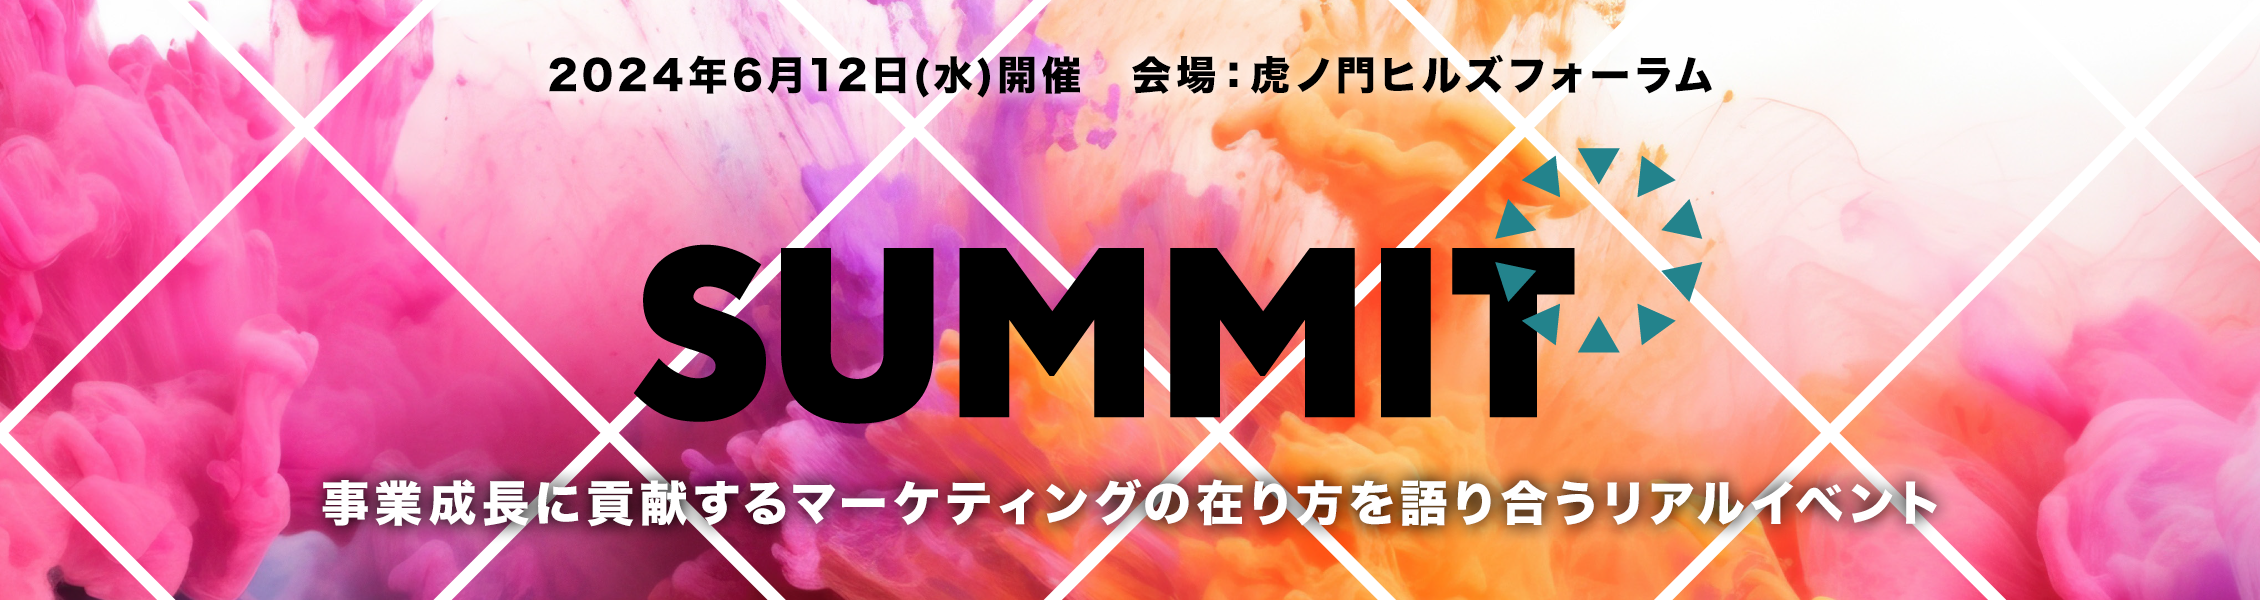 宣伝会議サミット2024(夏) 東京